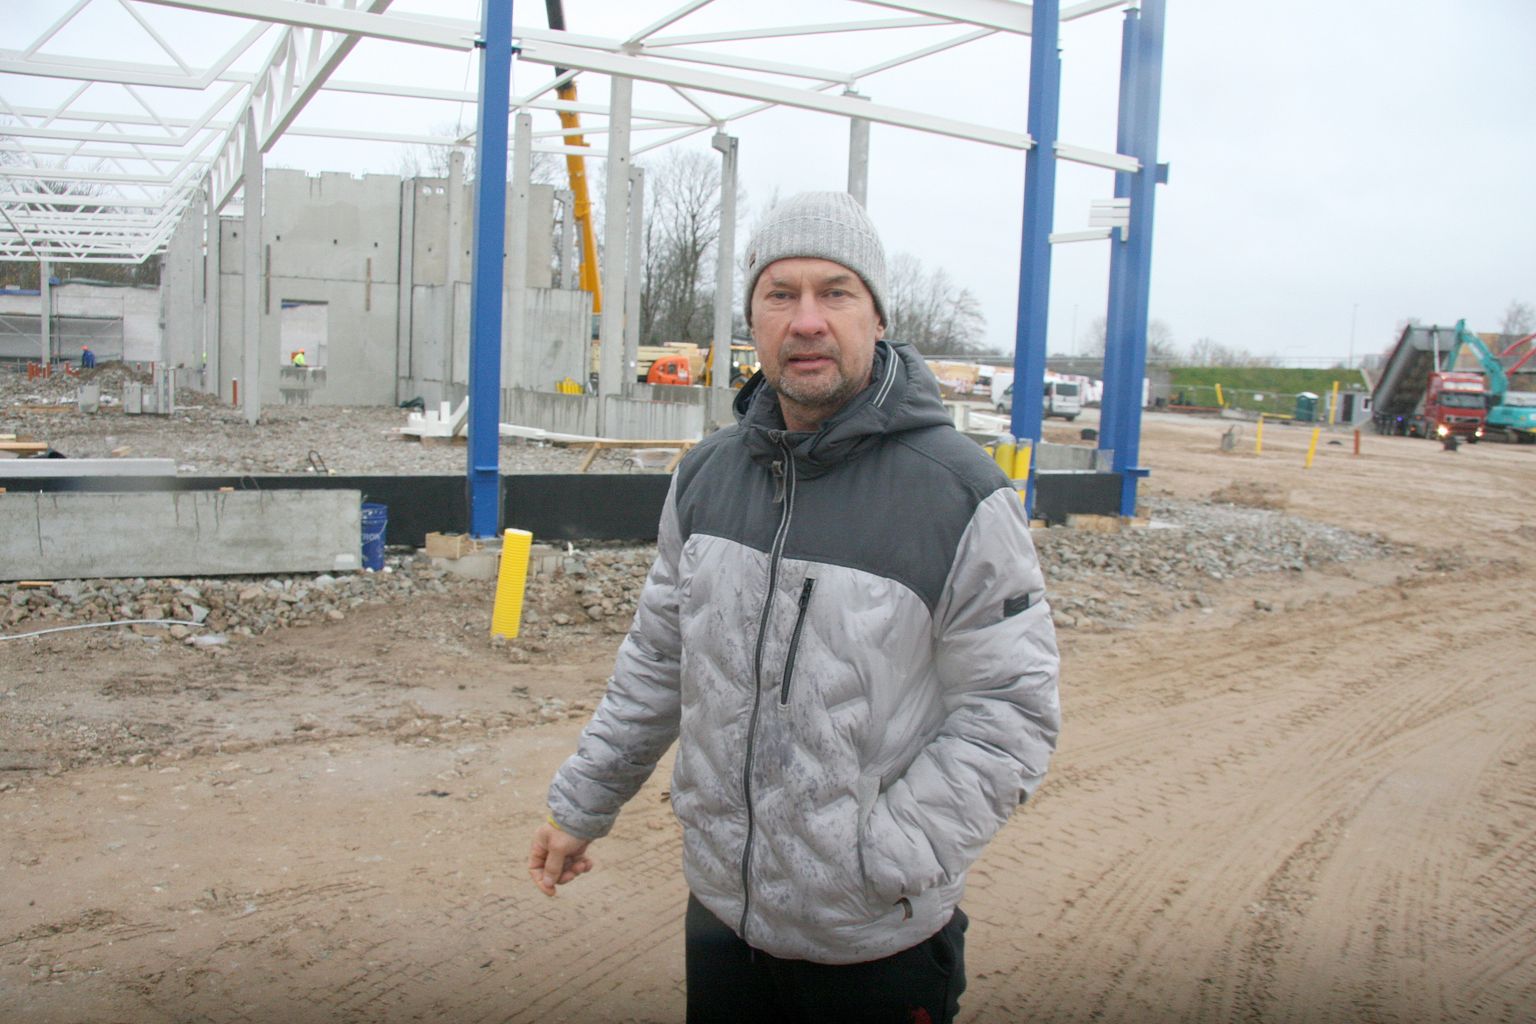 Хотя "Lidl Eesti" ликвидировал водяные трубы согласно проекту сноса, Тоомас Зилев находит, что фирма должна возместить ему причиненный ликвидацией труб ущерб.